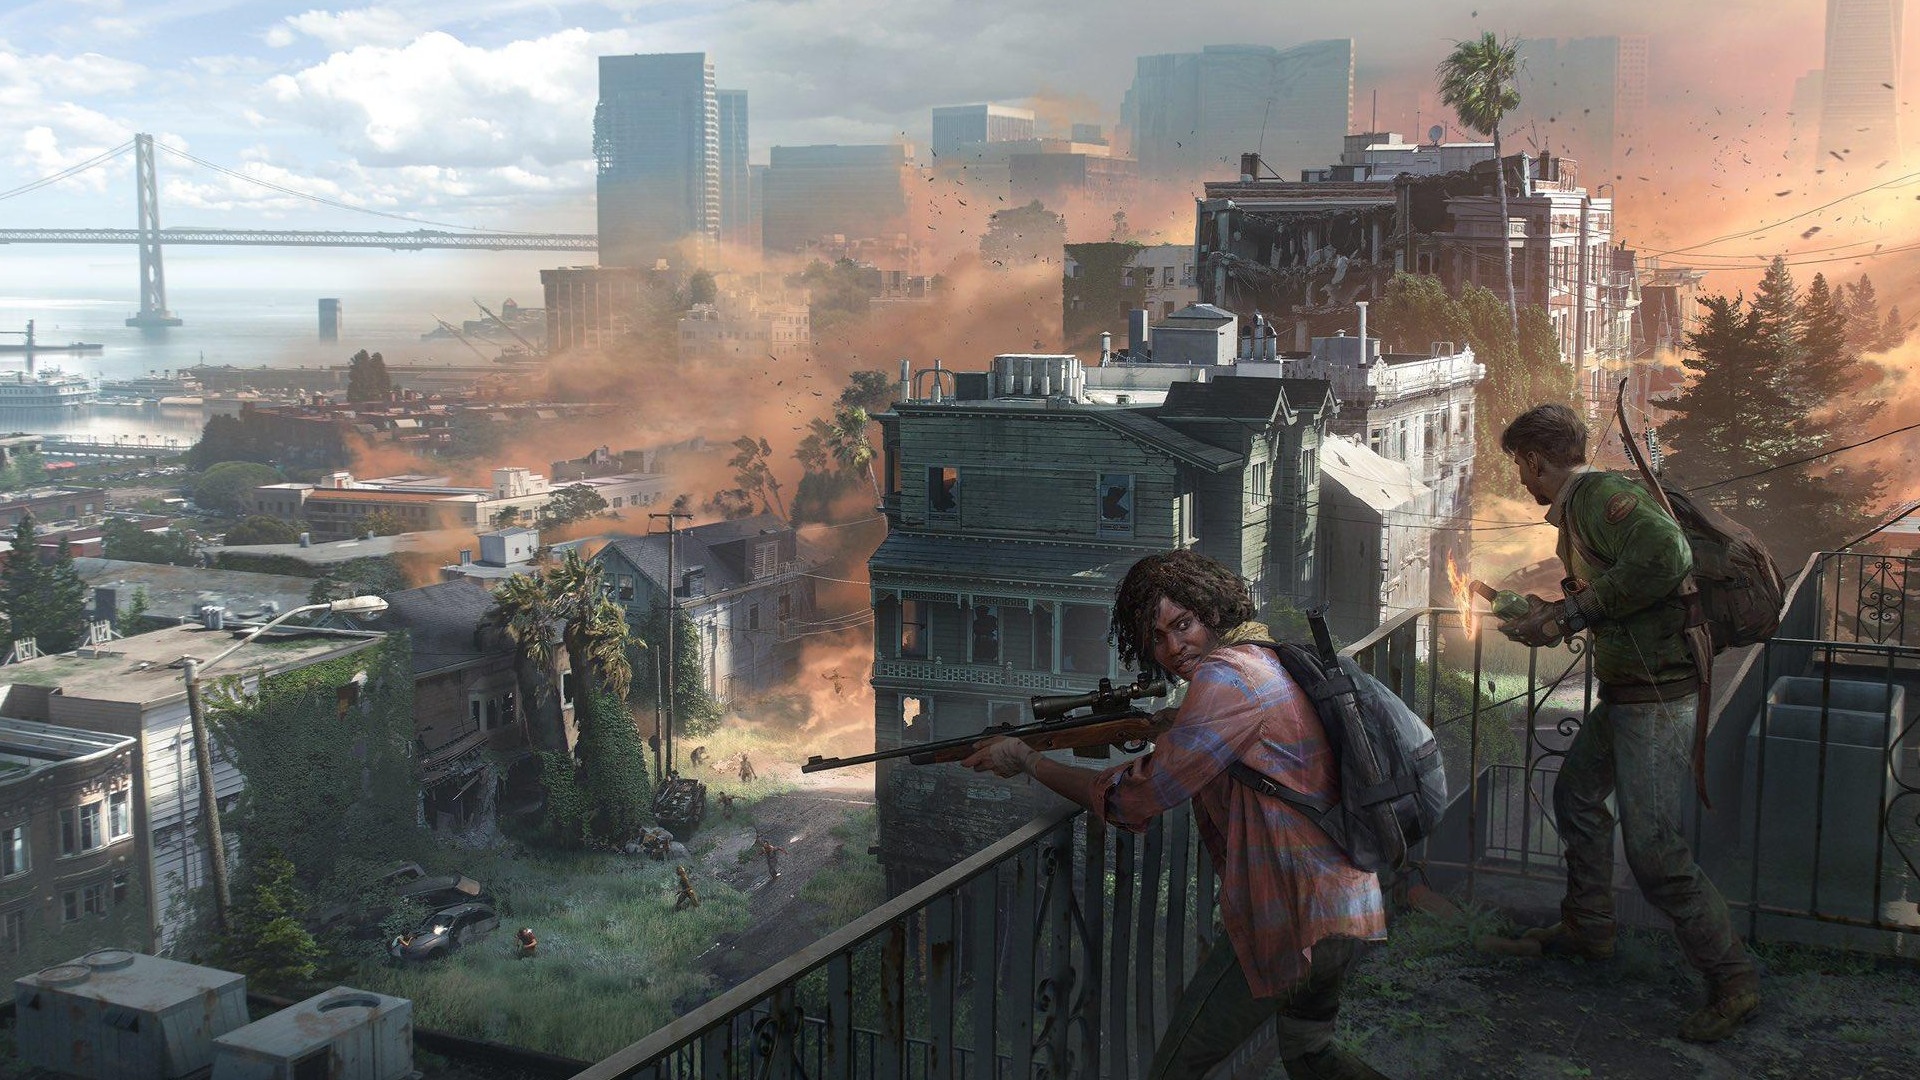 (Poza kilkoma grafikami koncepcyjnymi, nie ma prawie nic do zobaczenia na temat rozgrywki wieloosobowej w The Last of Us)